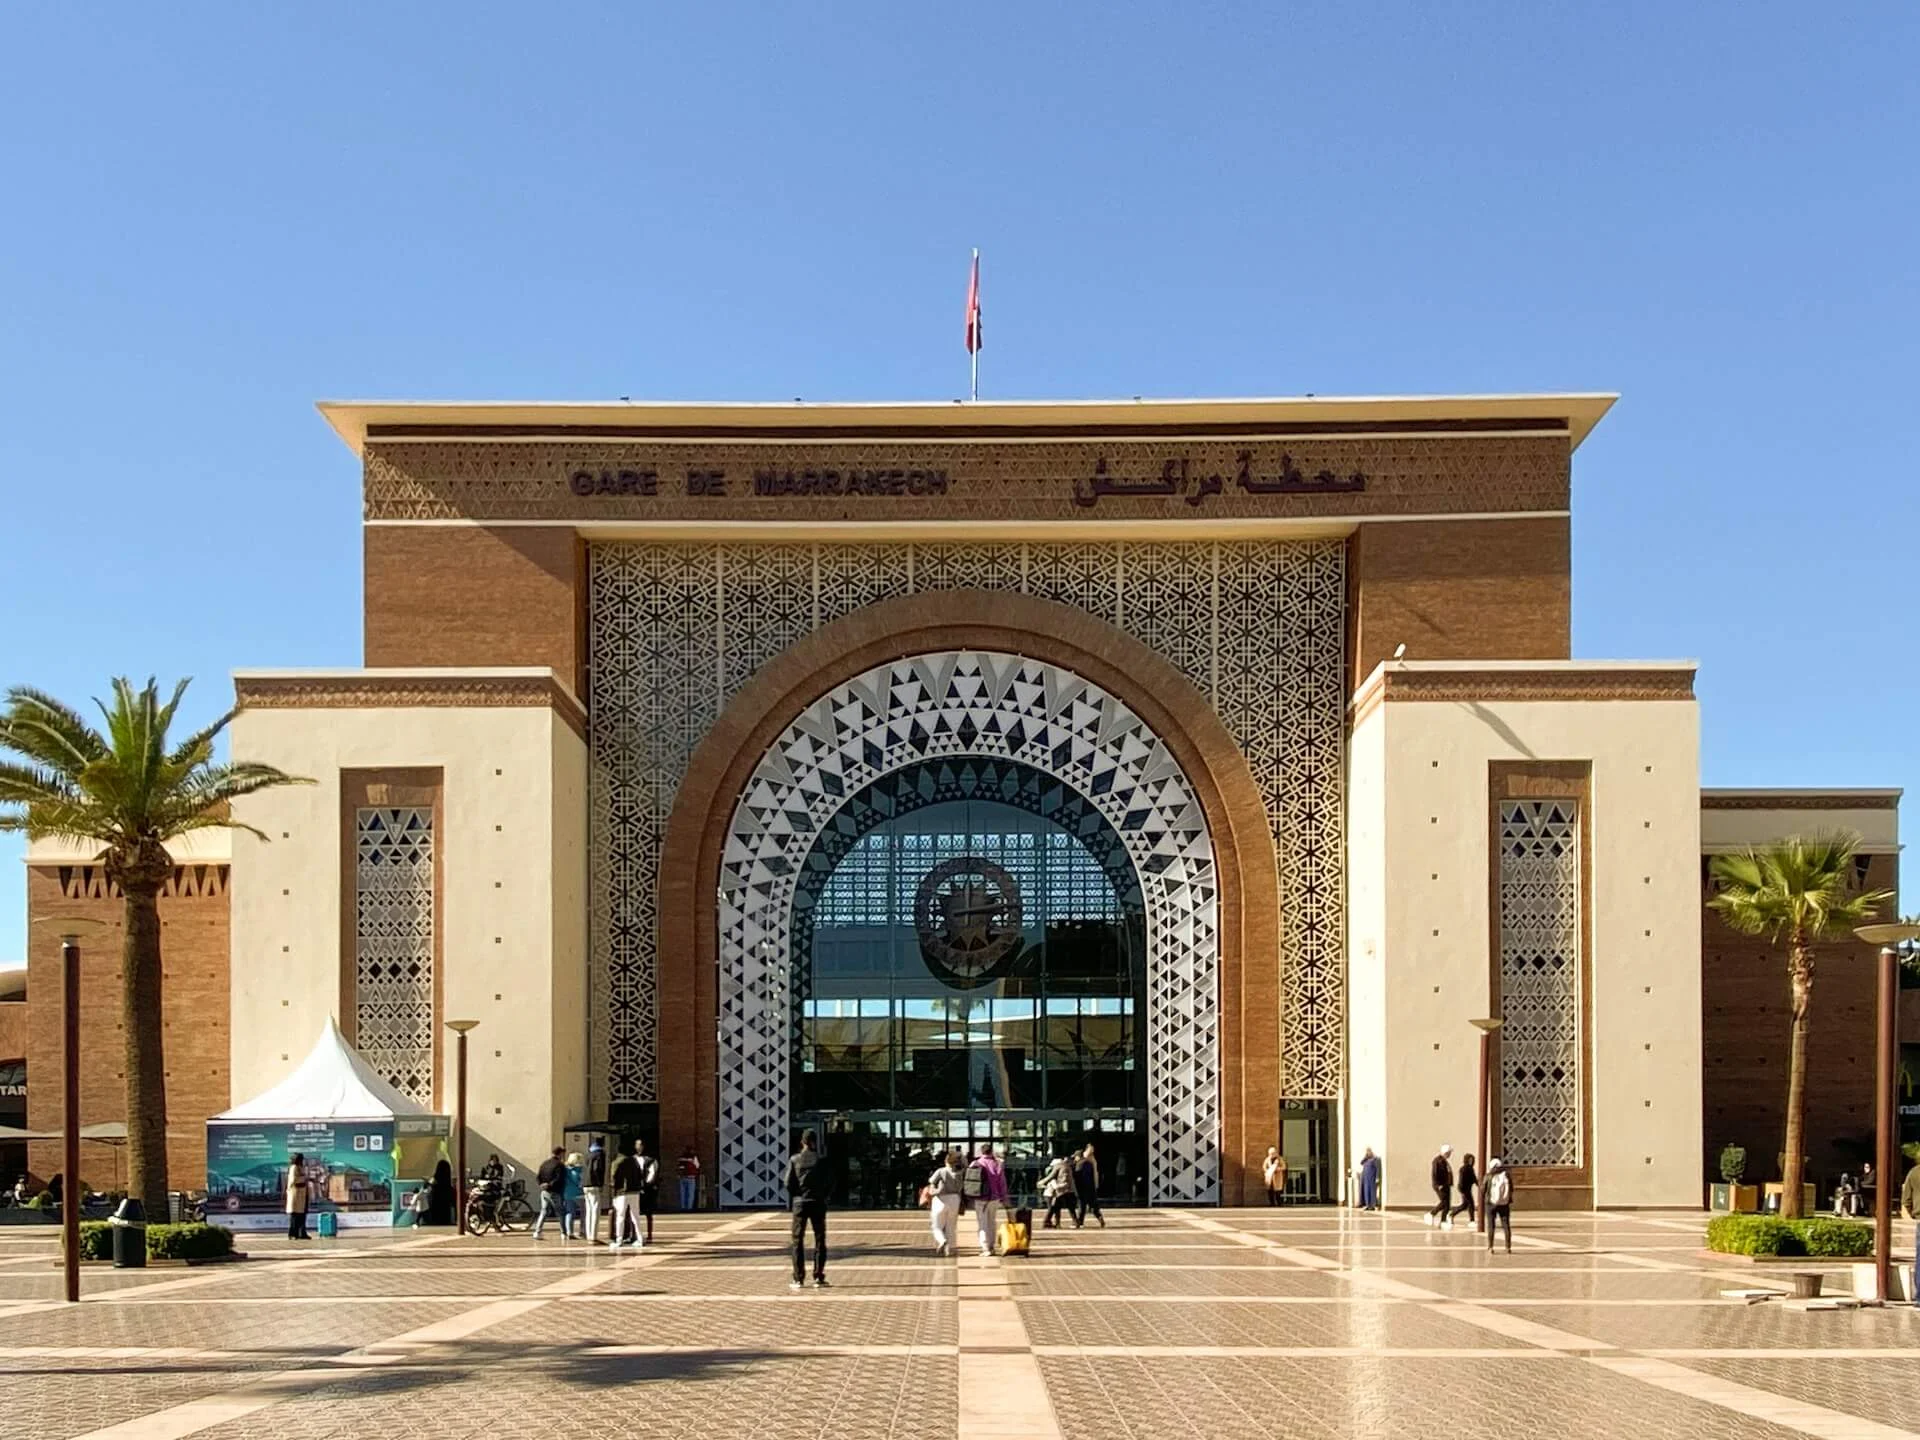 La gare de Marrakech